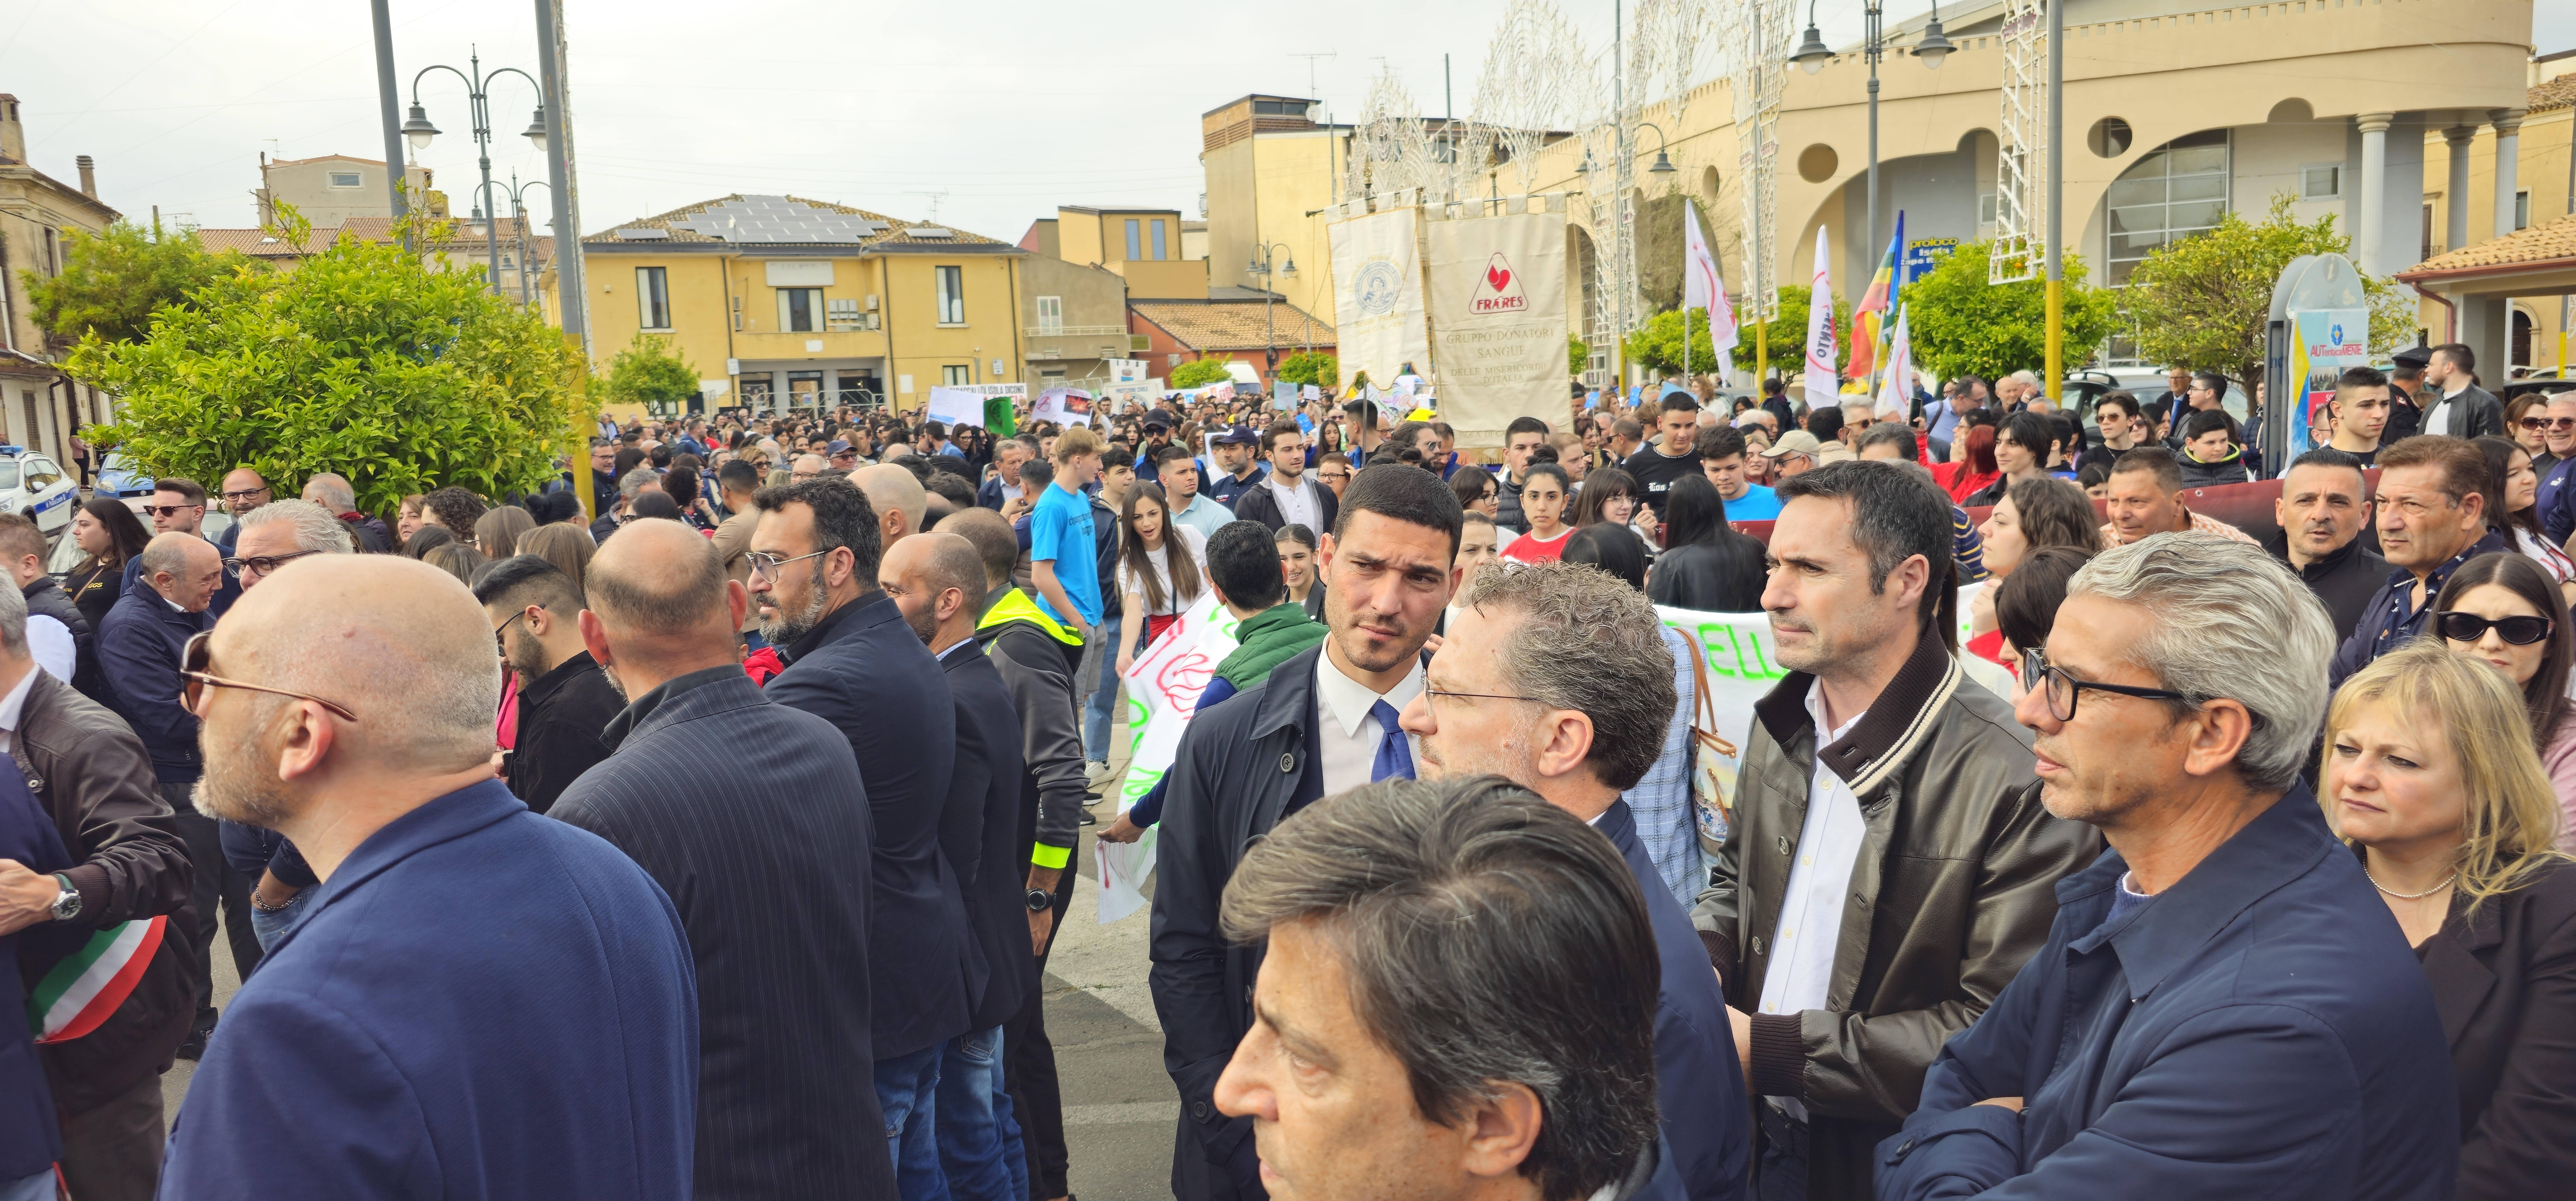 Catanzaro. Ernesto Alecci  riguardo la manifestazione contro la ‘ndrangheta a Isola Capo Rizzuto (KR).